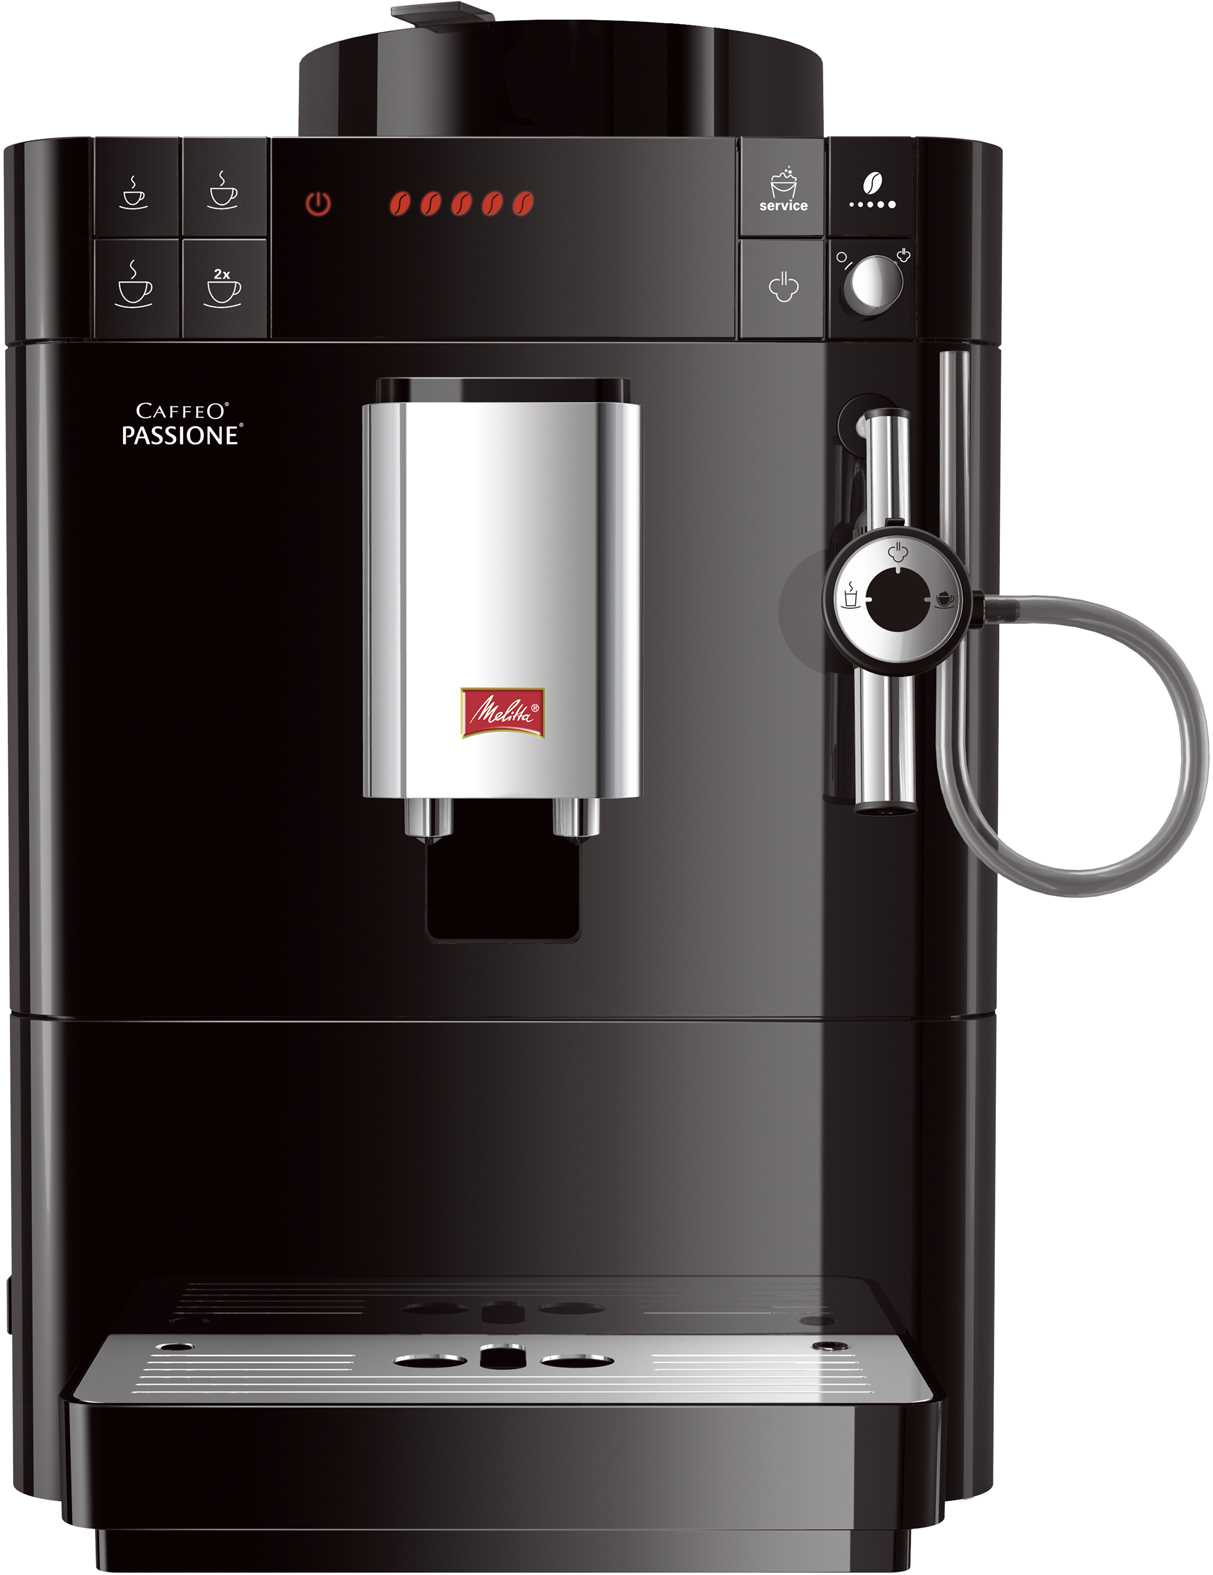 Melitta CAFFEO PASSIONE BLACK Volautomatische espressomachine F530-102